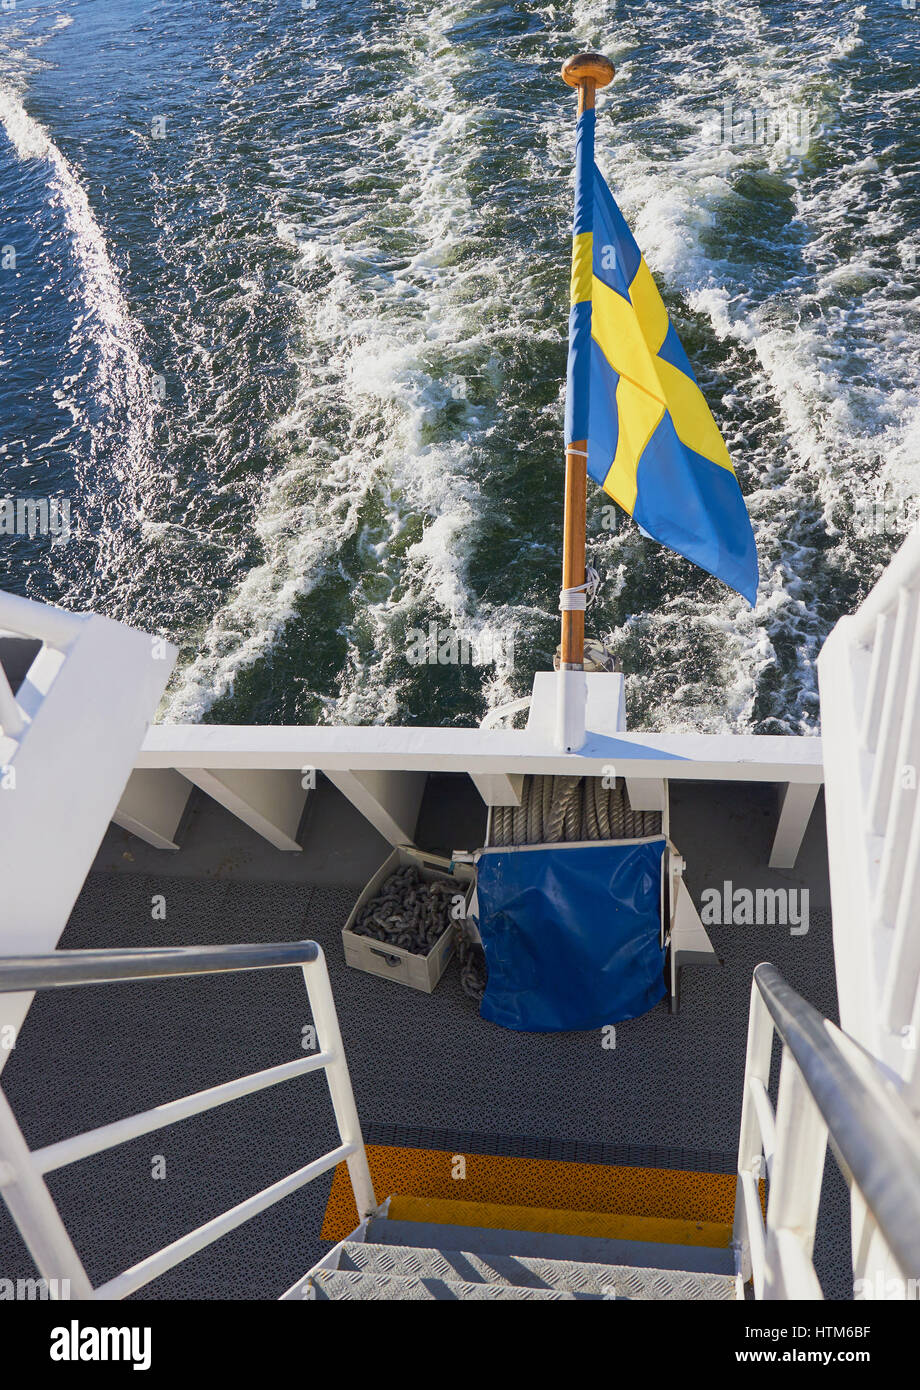 Swedish flag flying from speeding boat, Sweden, Scandinavia Stock Photo